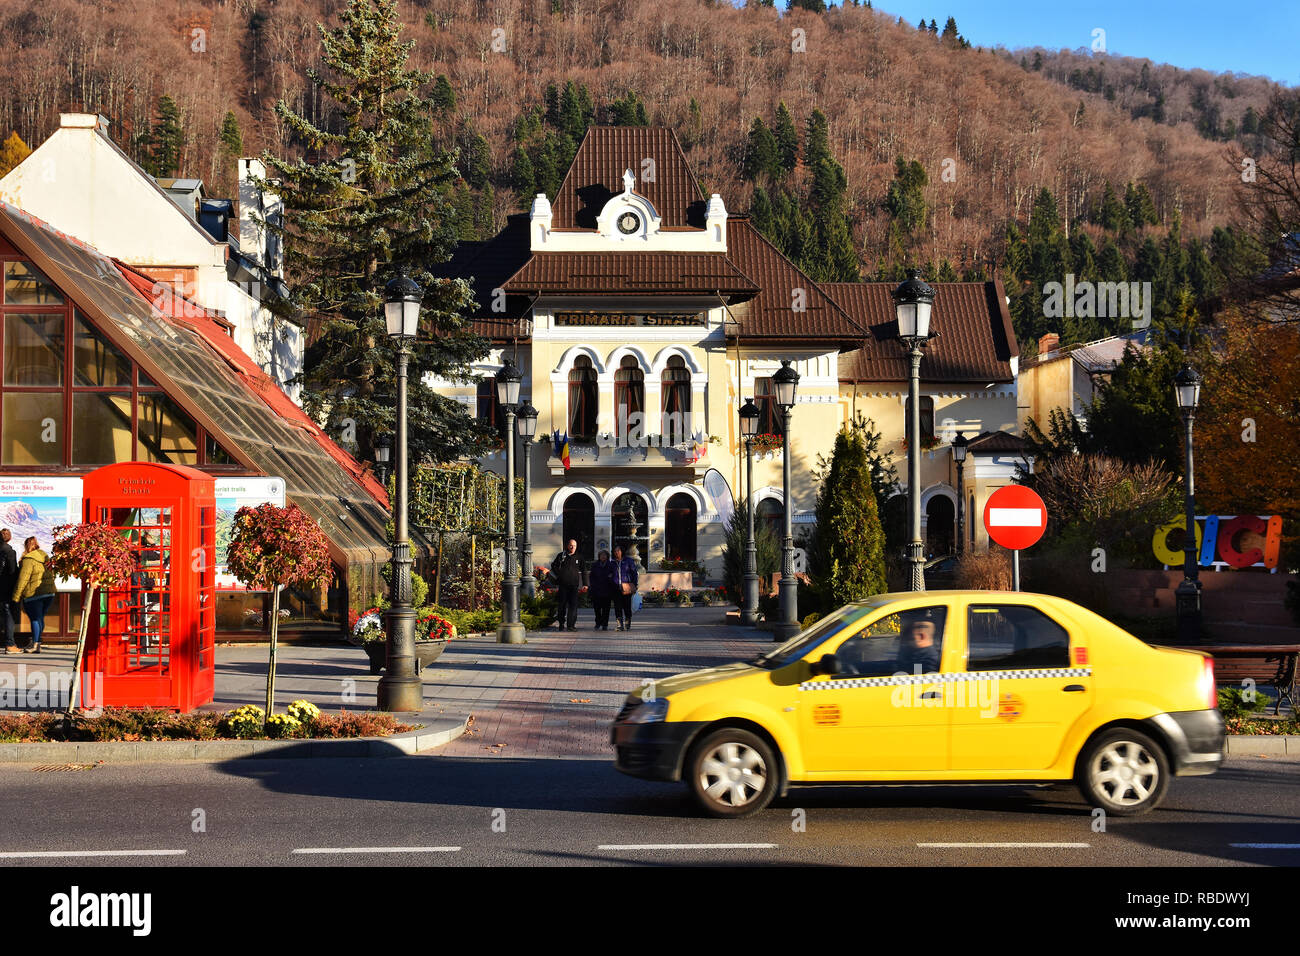 SINAIA, Roumanie - le 7 novembre 2018. La ville de Sinaia et Street View. Bâtiment de l'Hôtel de ville de Sinaia , la Vallée de Prahova, Roumanie. Banque D'Images